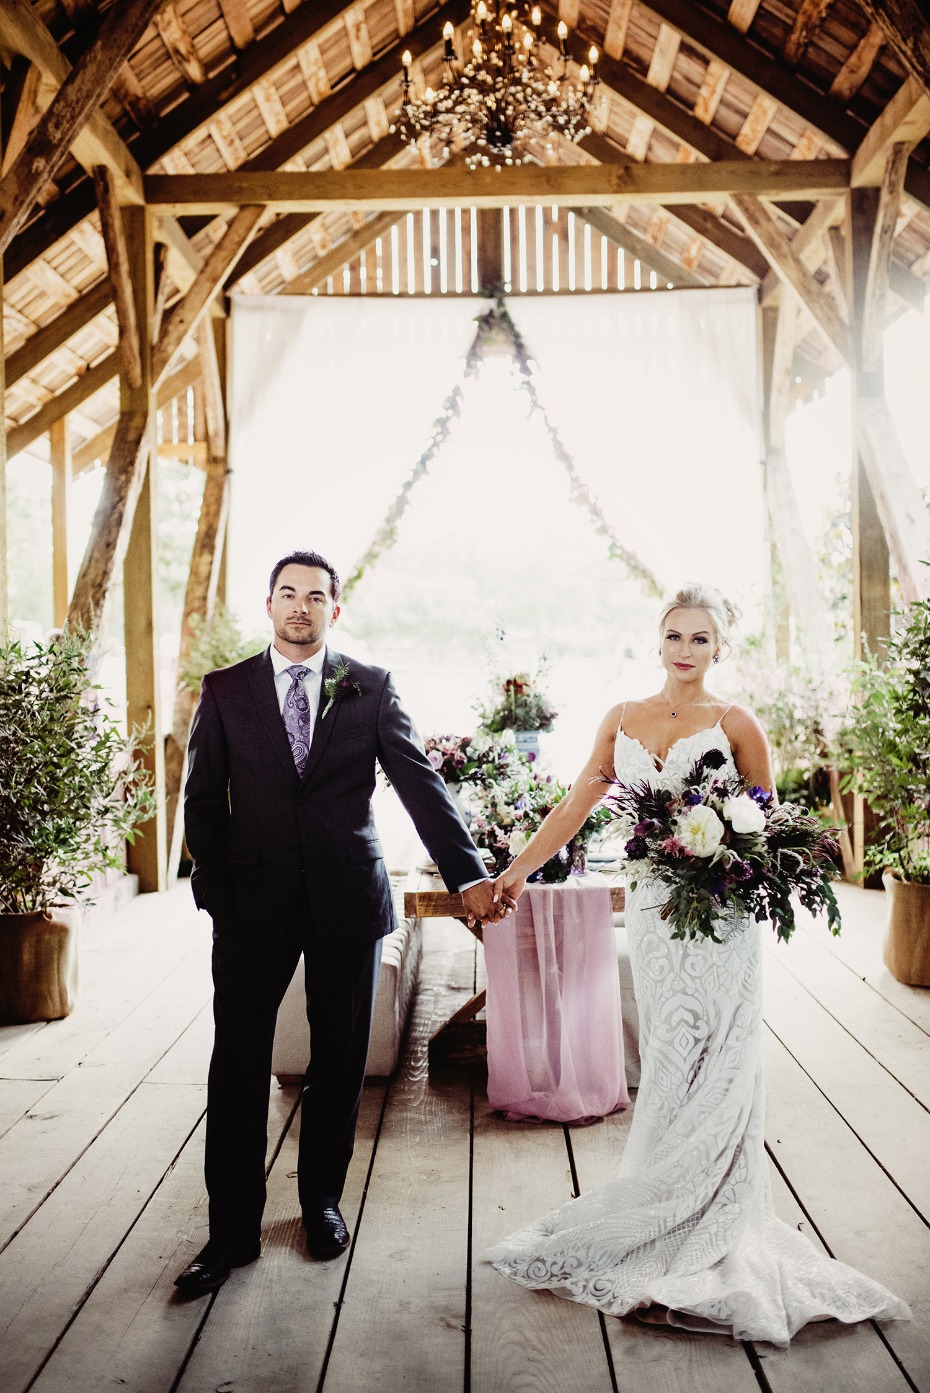 Gorgeous purple and white wedding ideas